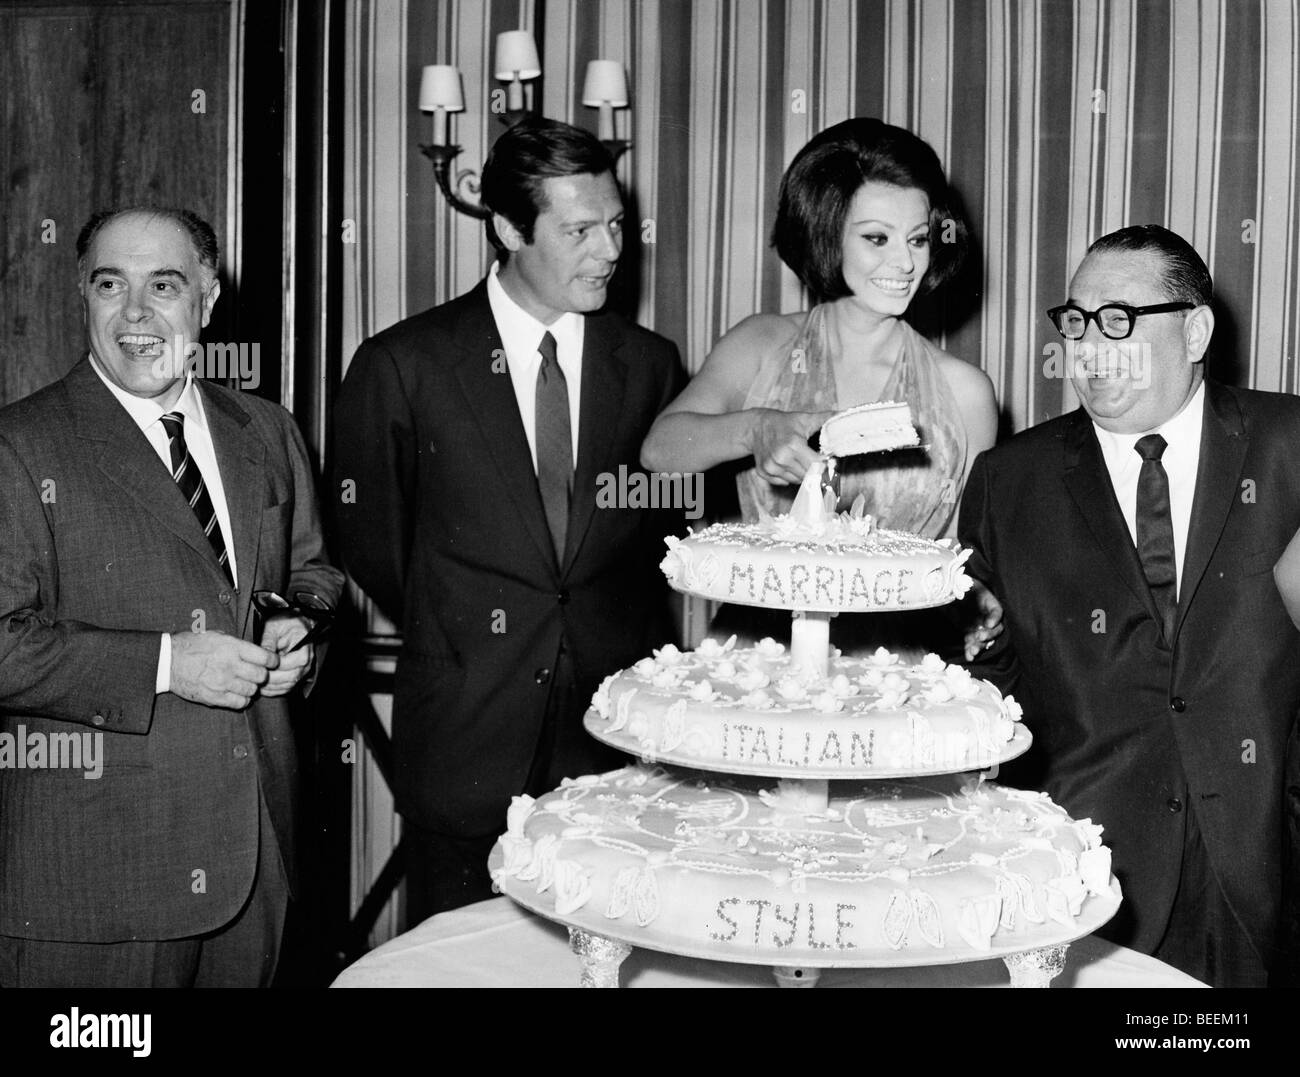 La actriz Sophia Loren con Marcello Mastroianni y Joseph E. Levine en "matrimonio" de estilo italiano Foto de stock